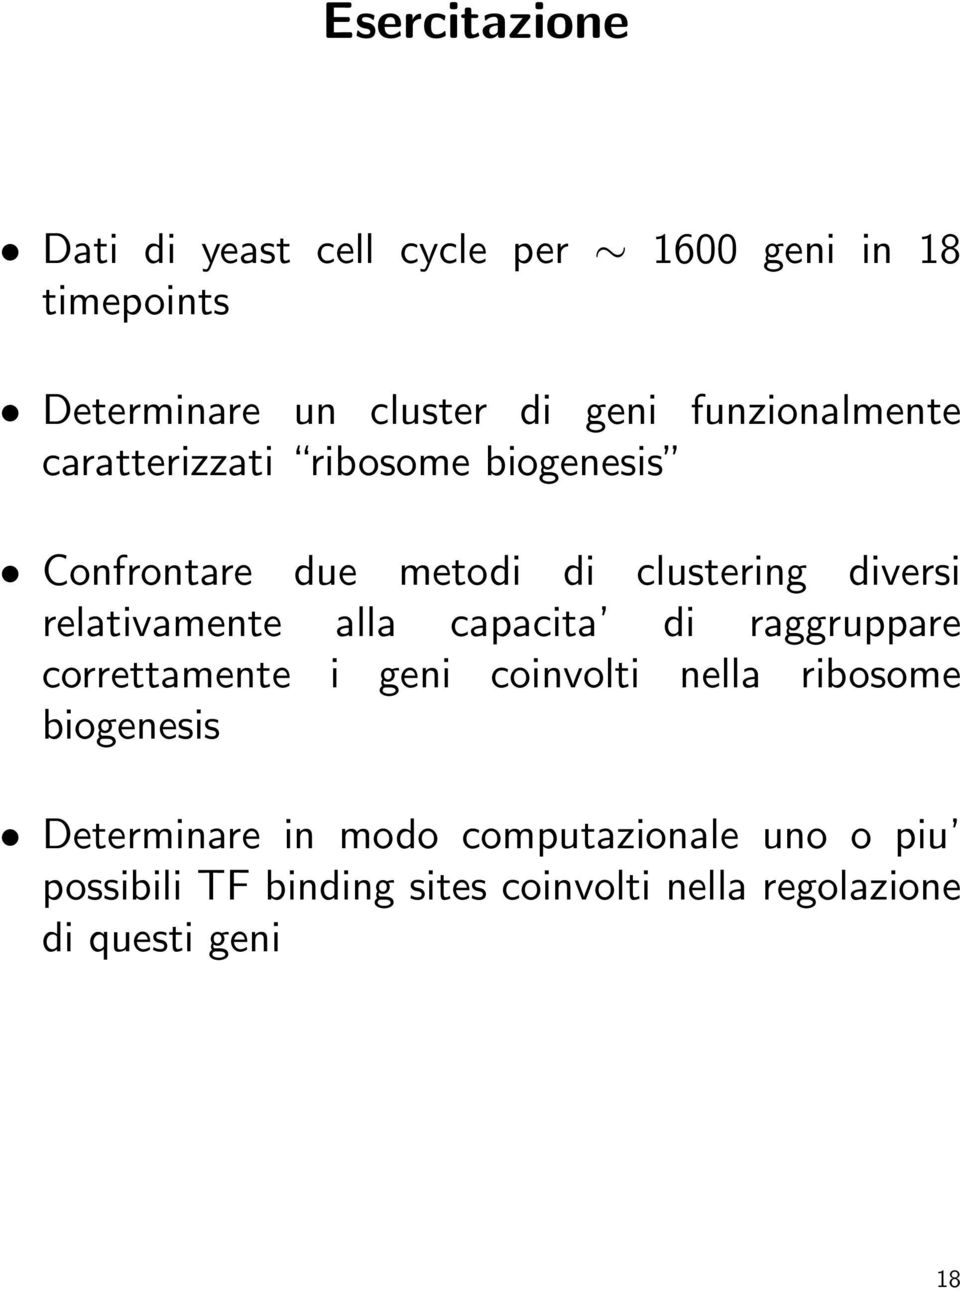 relativamente alla capacita di raggruppare correttamente i geni coinvolti nella ribosome biogenesis